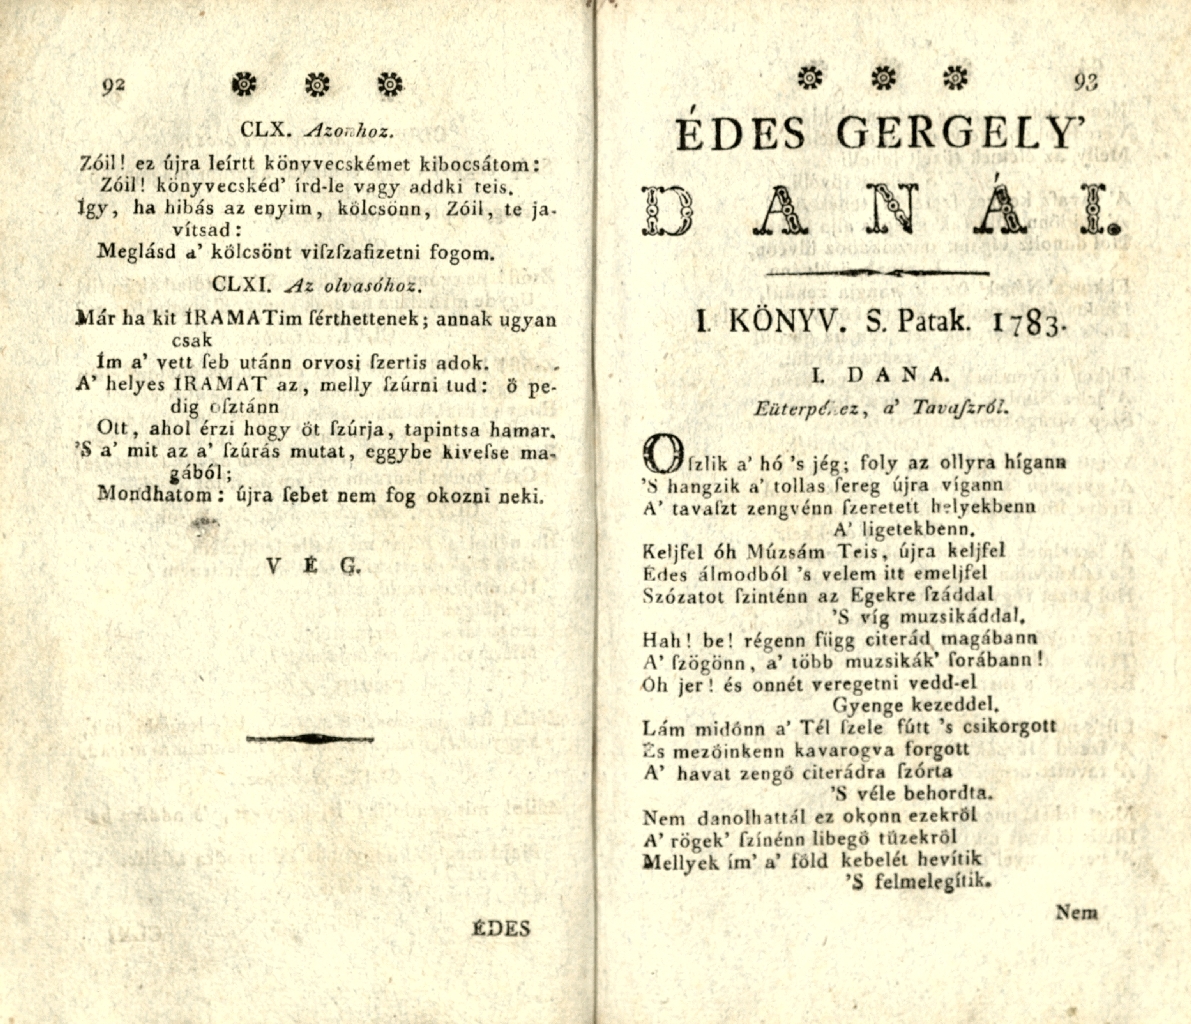 Édes Gergely' íramati és danái, 1803